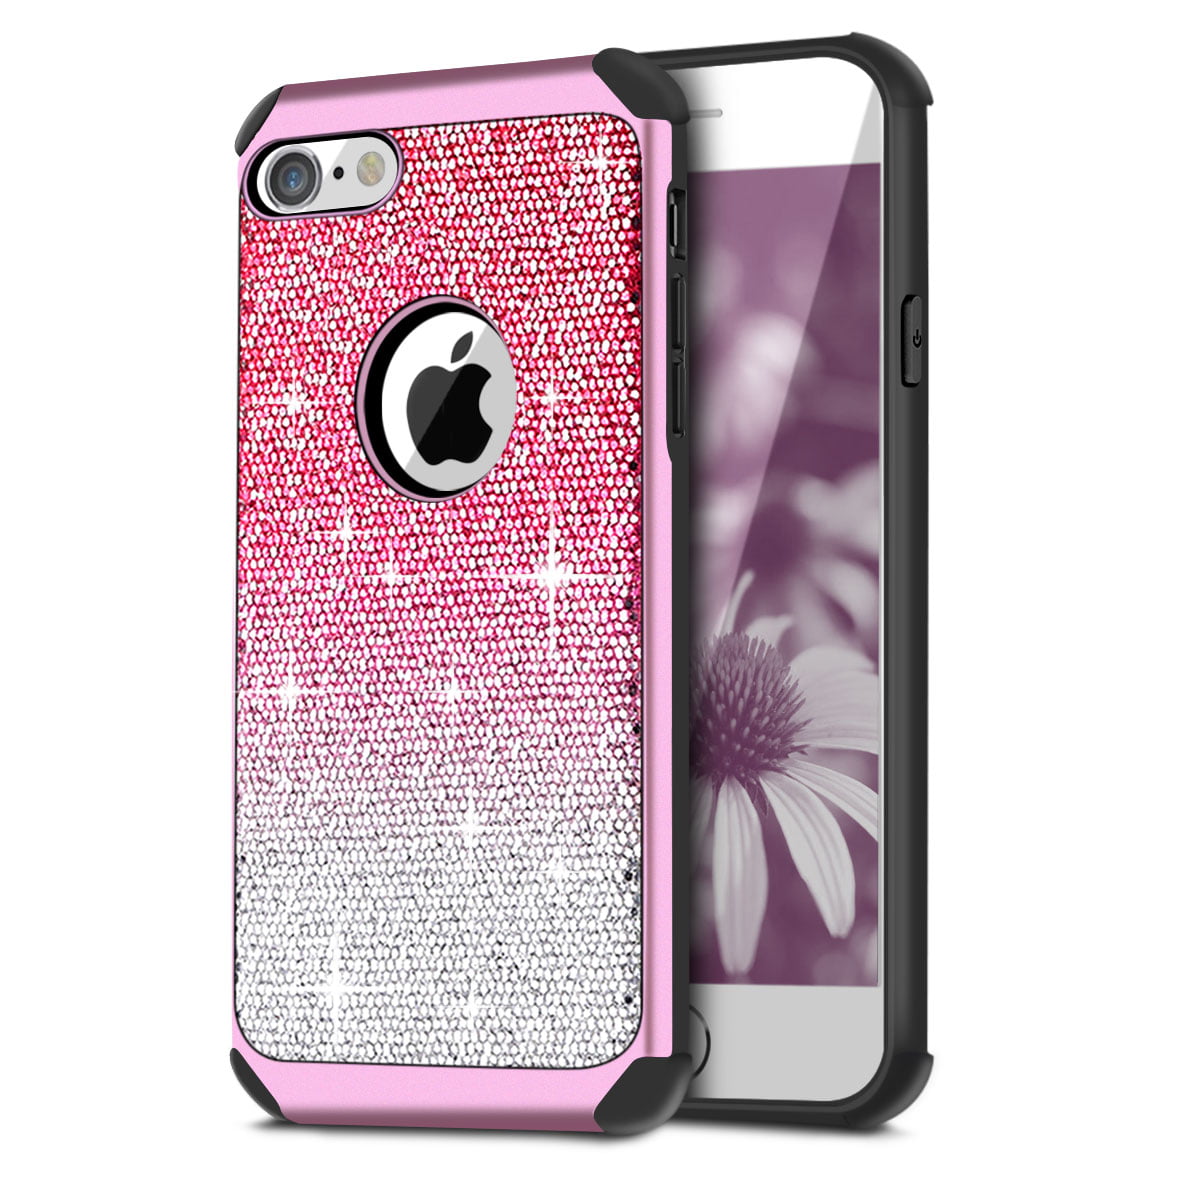 Case iPhone 6 Plus Cellularvilla Hybrid Shiny Sparkle Luxury Glitter